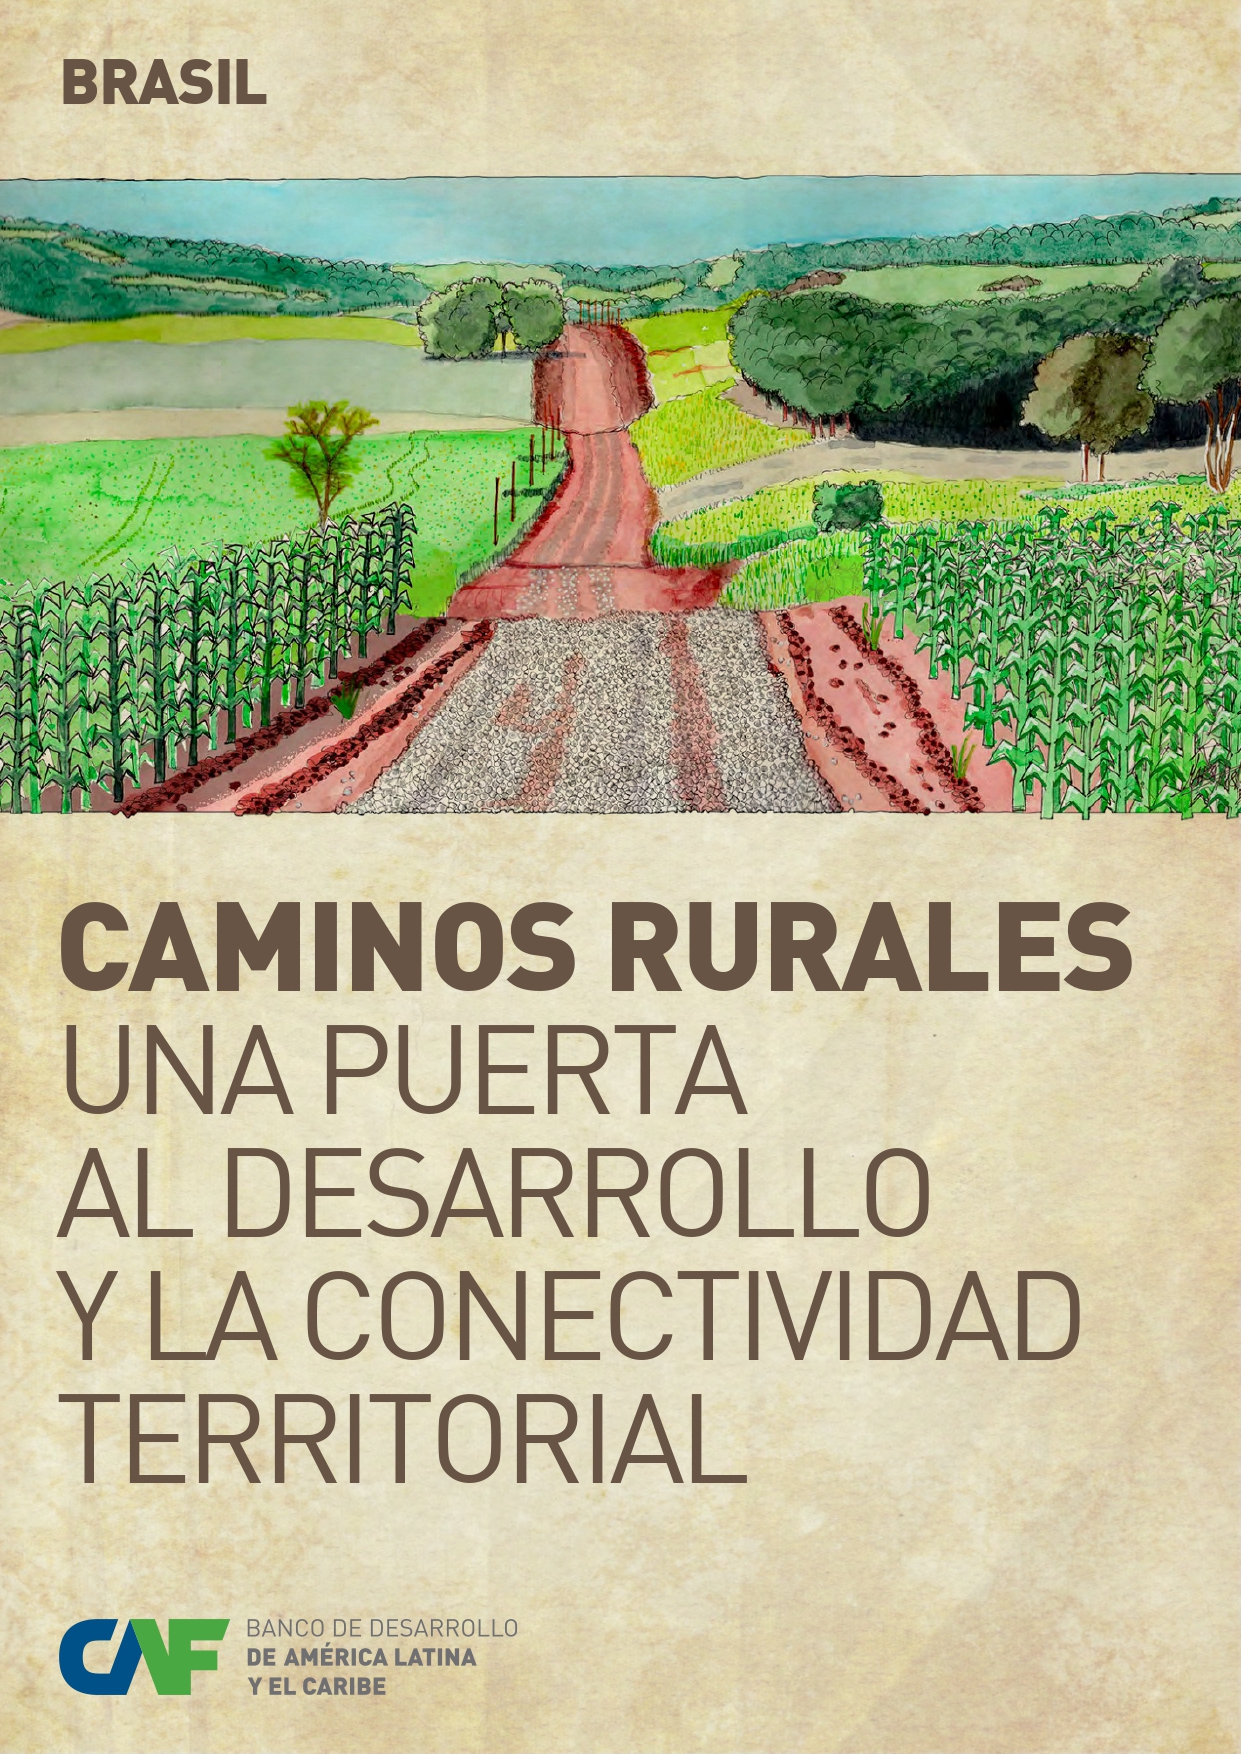 Caminos rurales, una puerta al desarrollo y la conectividad territorial - Brasil